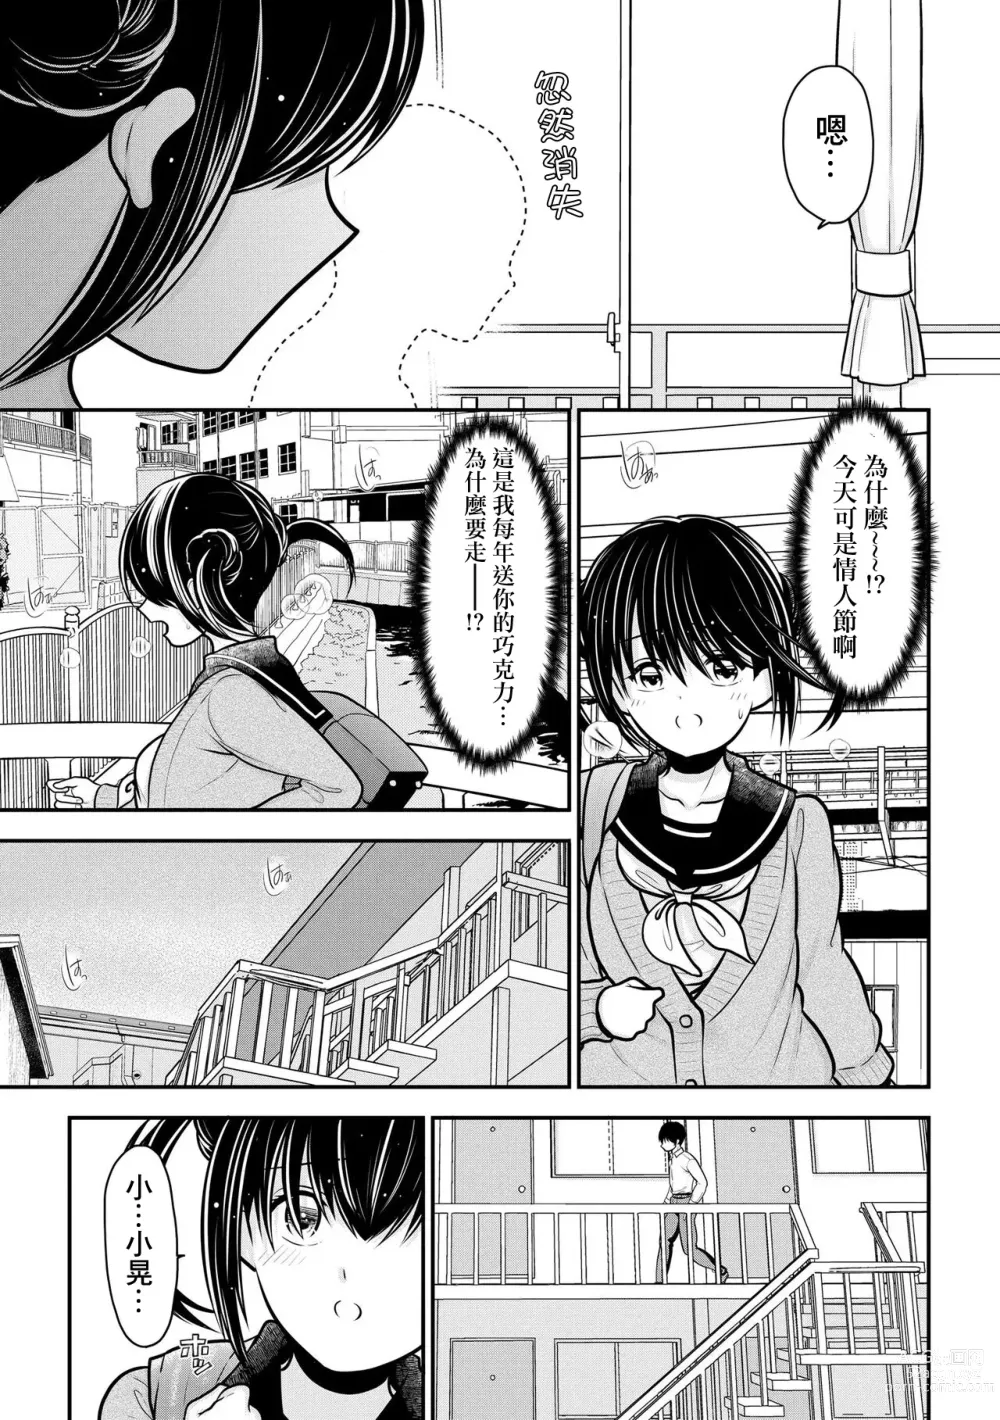 Page 6 of manga 我被人妻奪走童貞的理由~與偷情人妻初次的性愛~